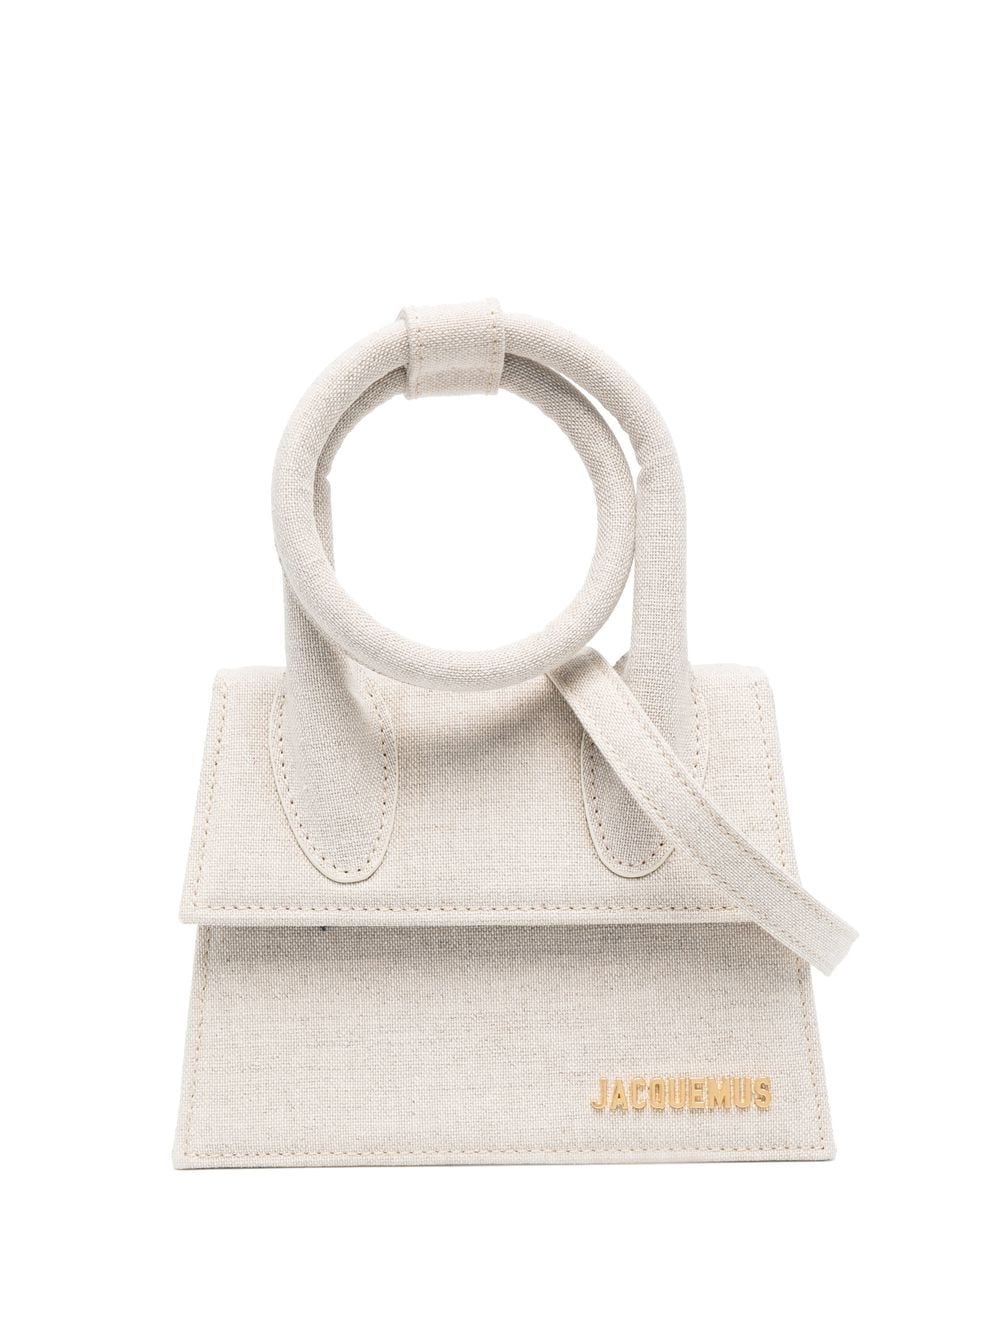 Grey Canvas Tote Handbag with Detachable Shoulder Strap and Coiled Top Handle